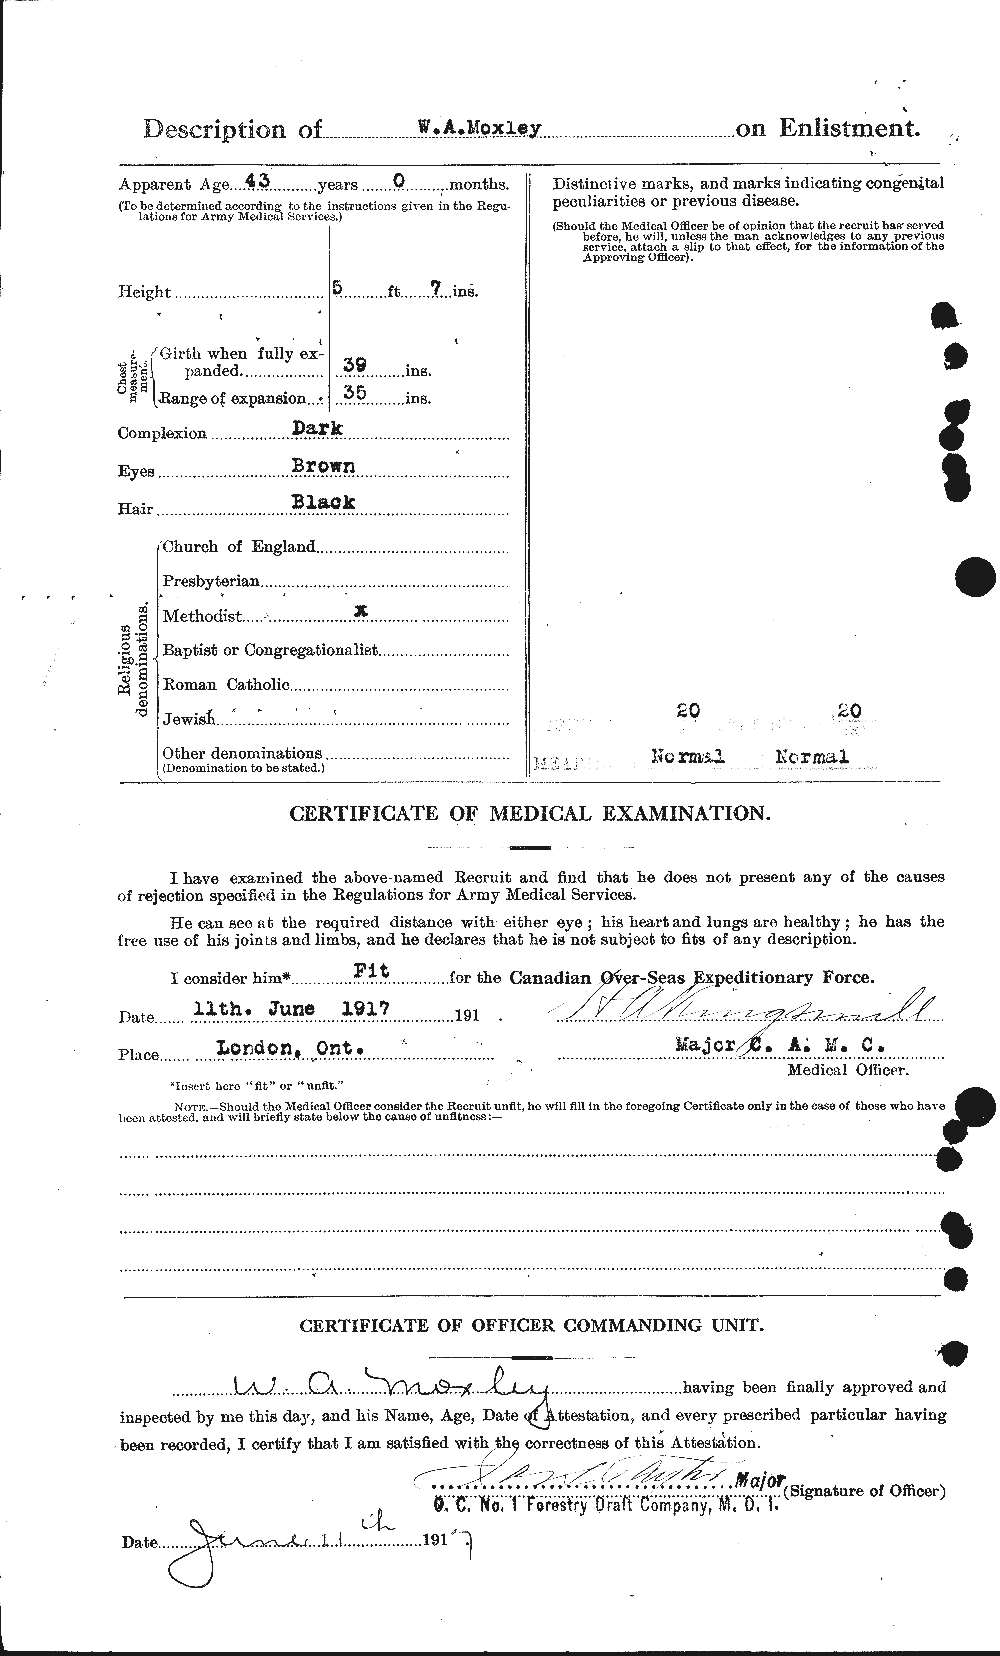 Dossiers du Personnel de la Première Guerre mondiale - CEC 510604b